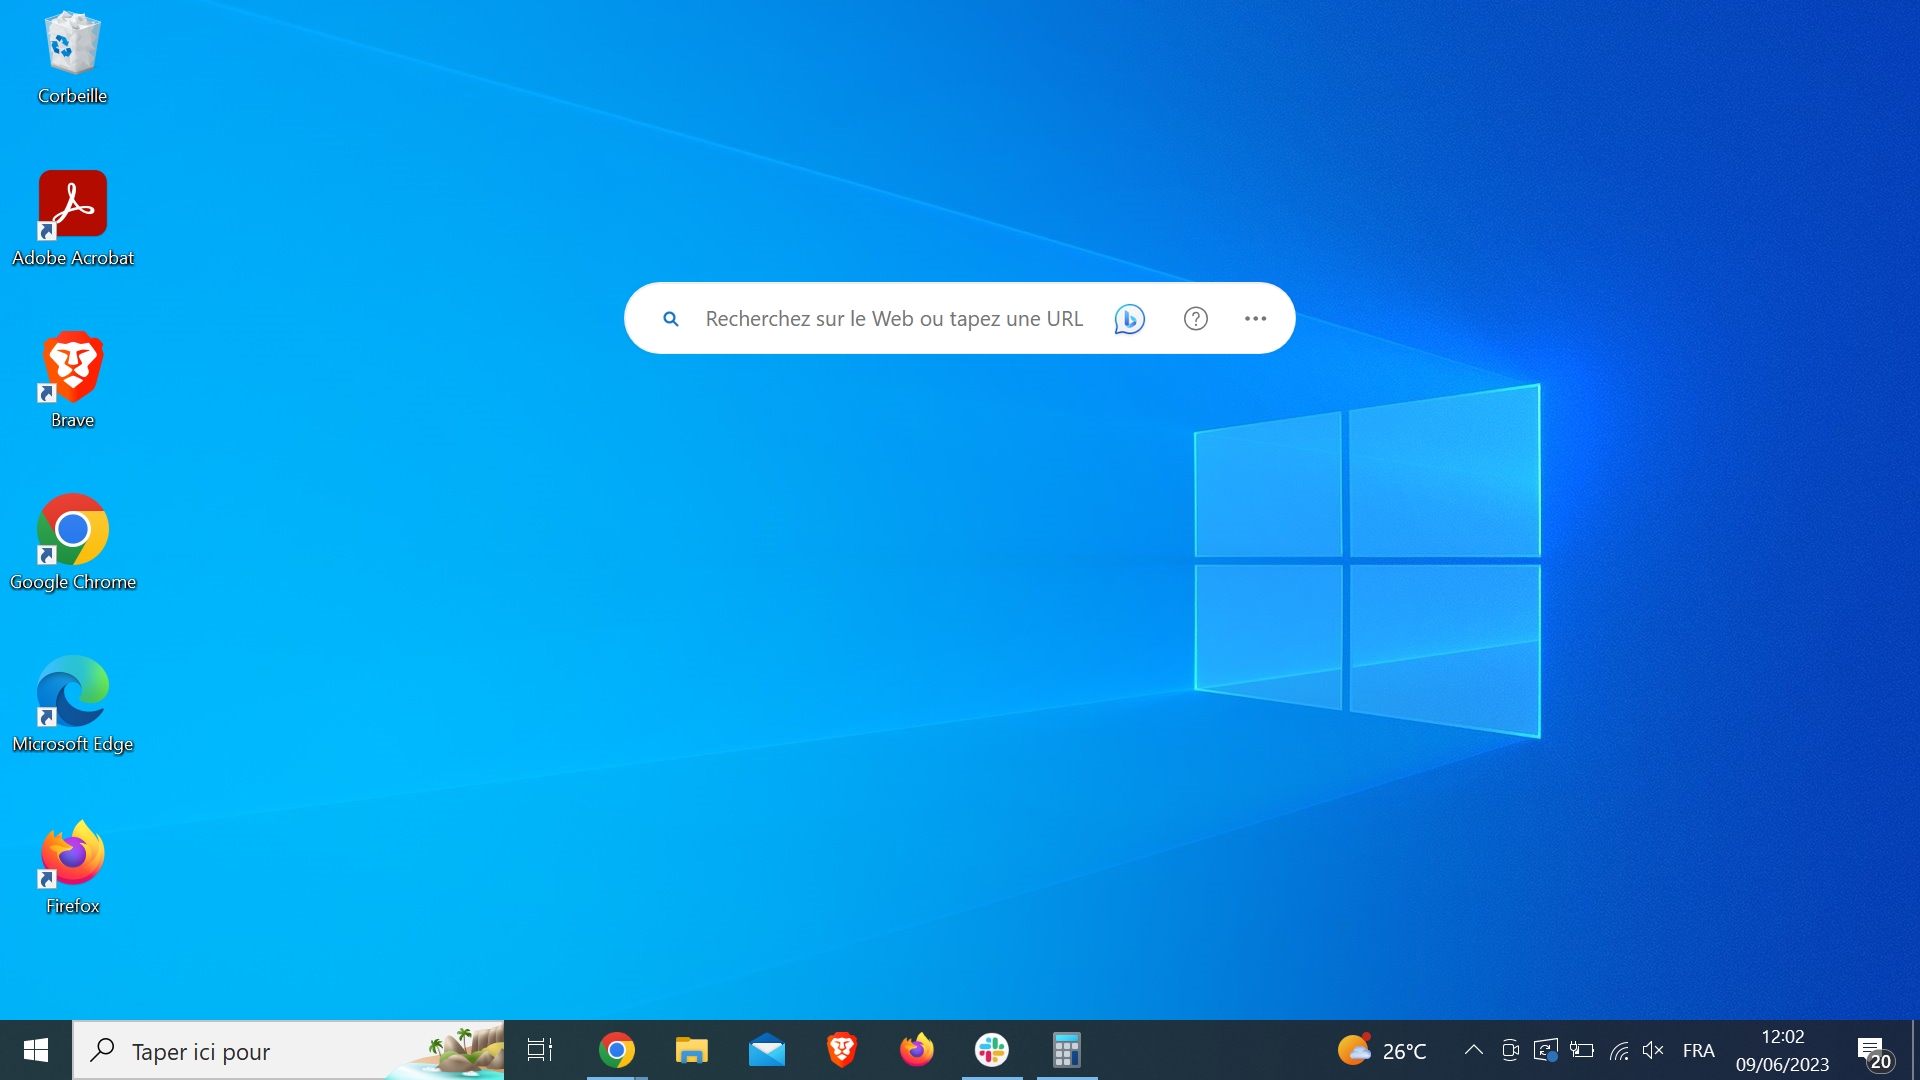 Le fond d'écran de Windows 10 n'est pas synthétique, c'est une